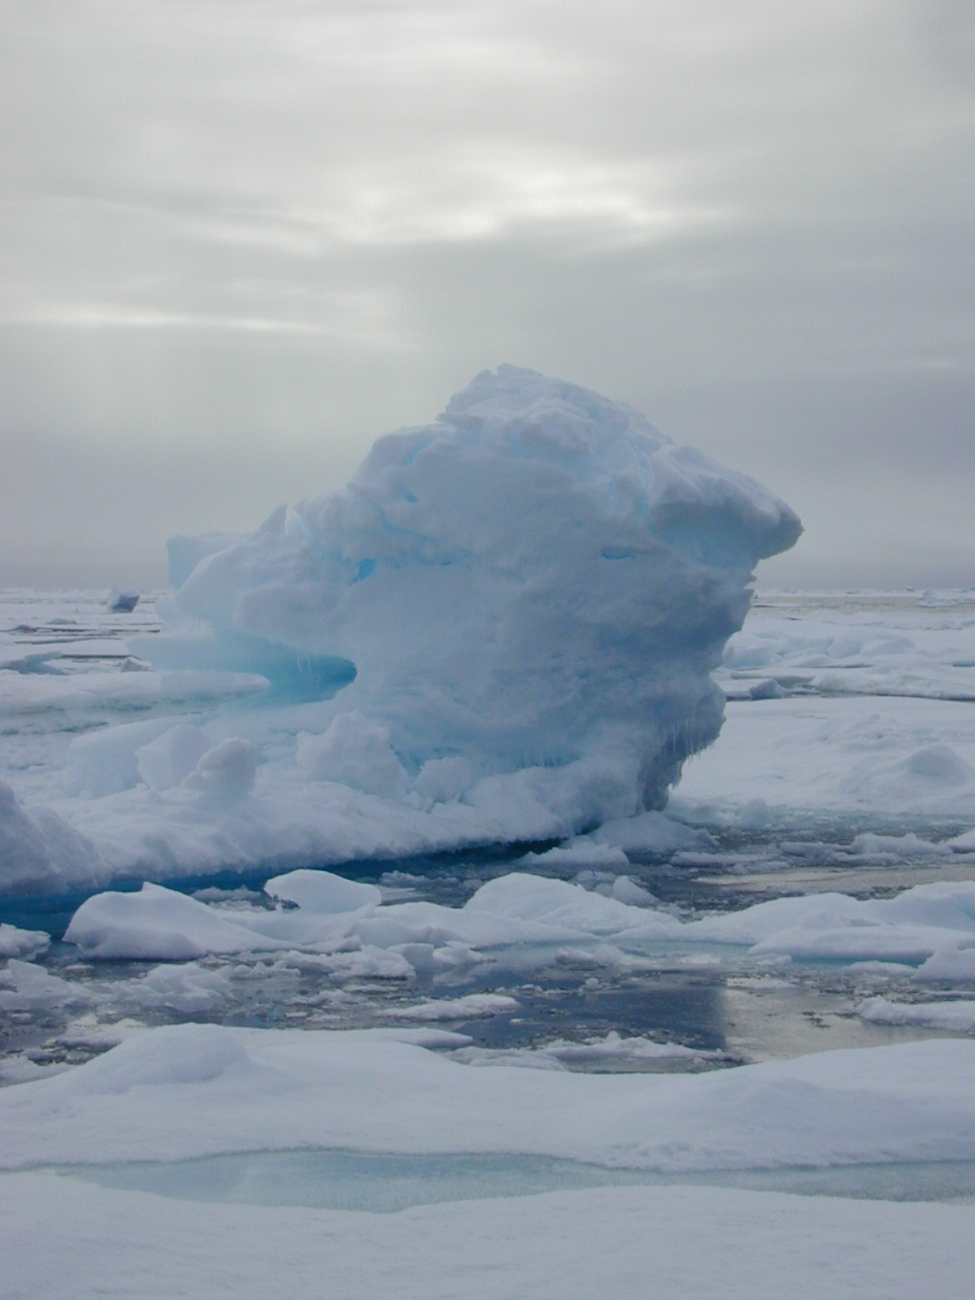 An ice berg in the Chukchi Sea